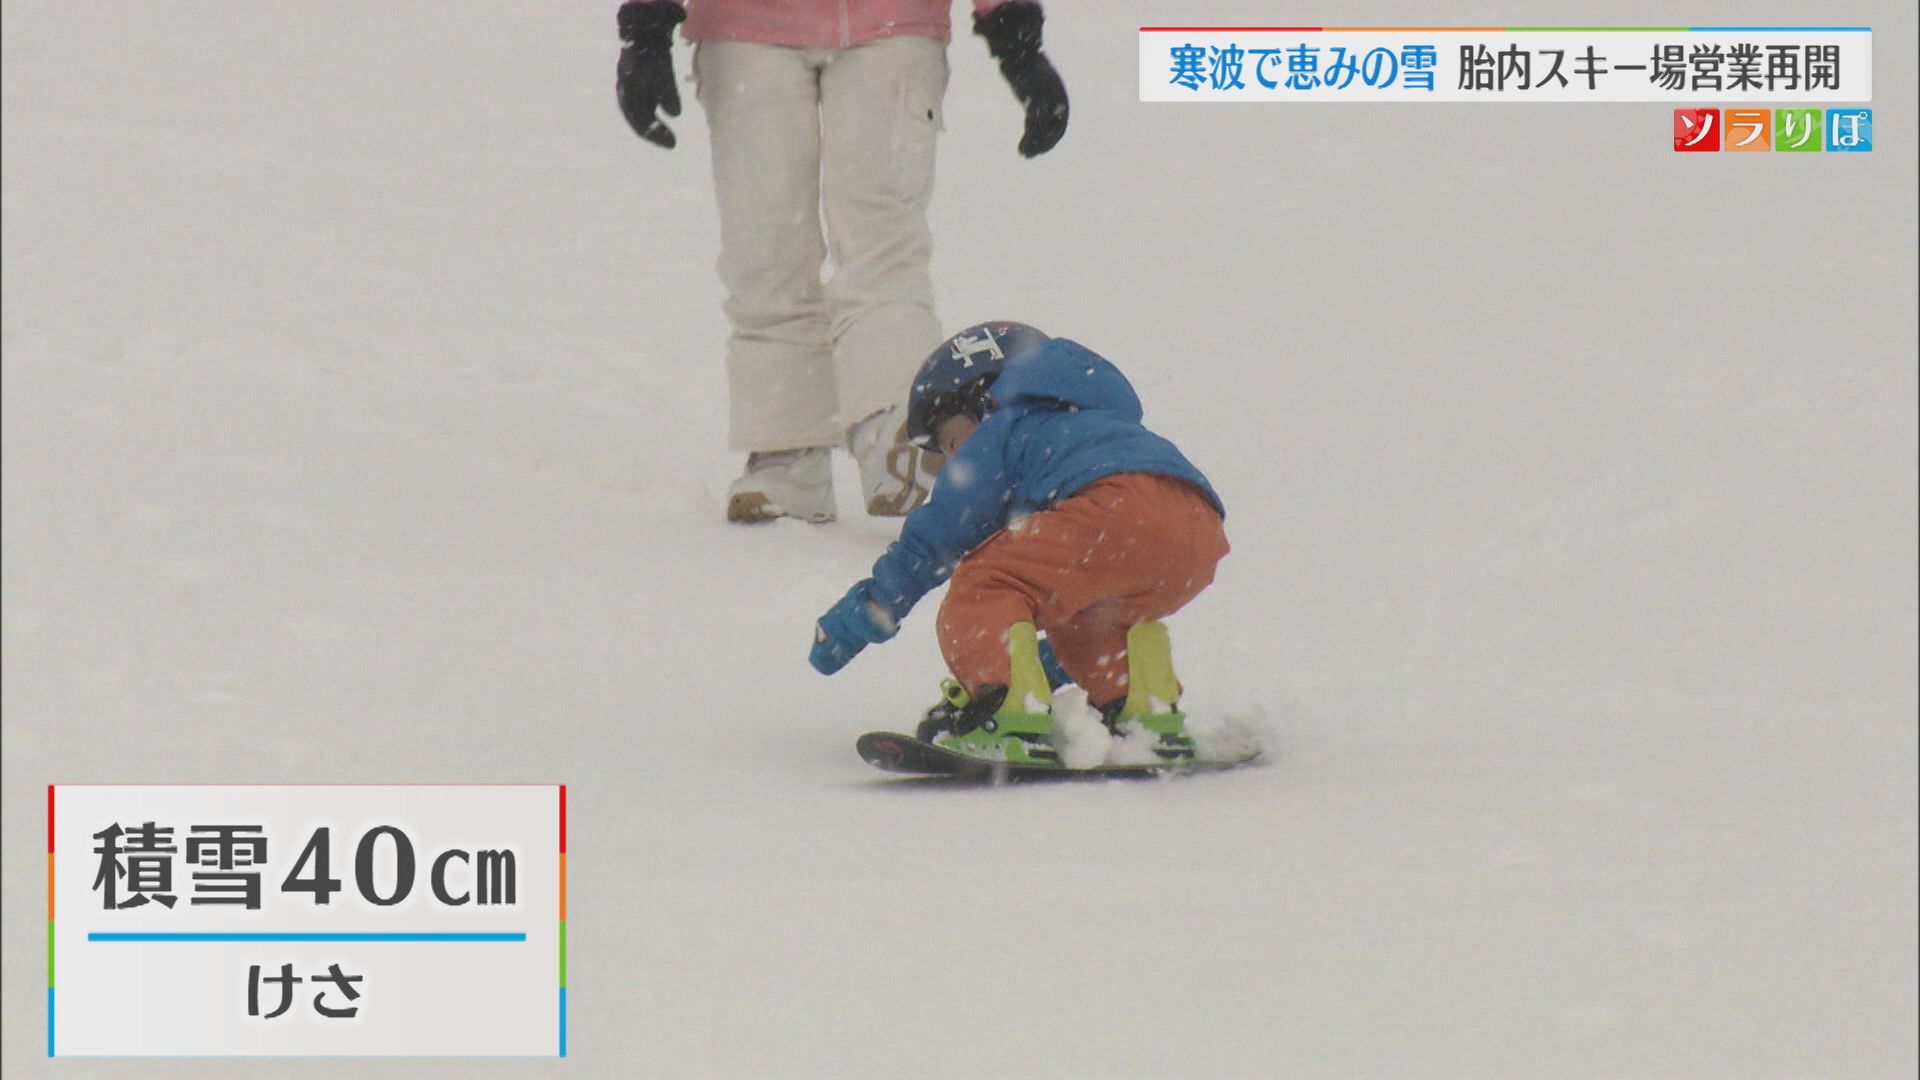 最強寒波で恵みの雪が 雪不足で休業の胎内スキー場 営業再開【新潟】